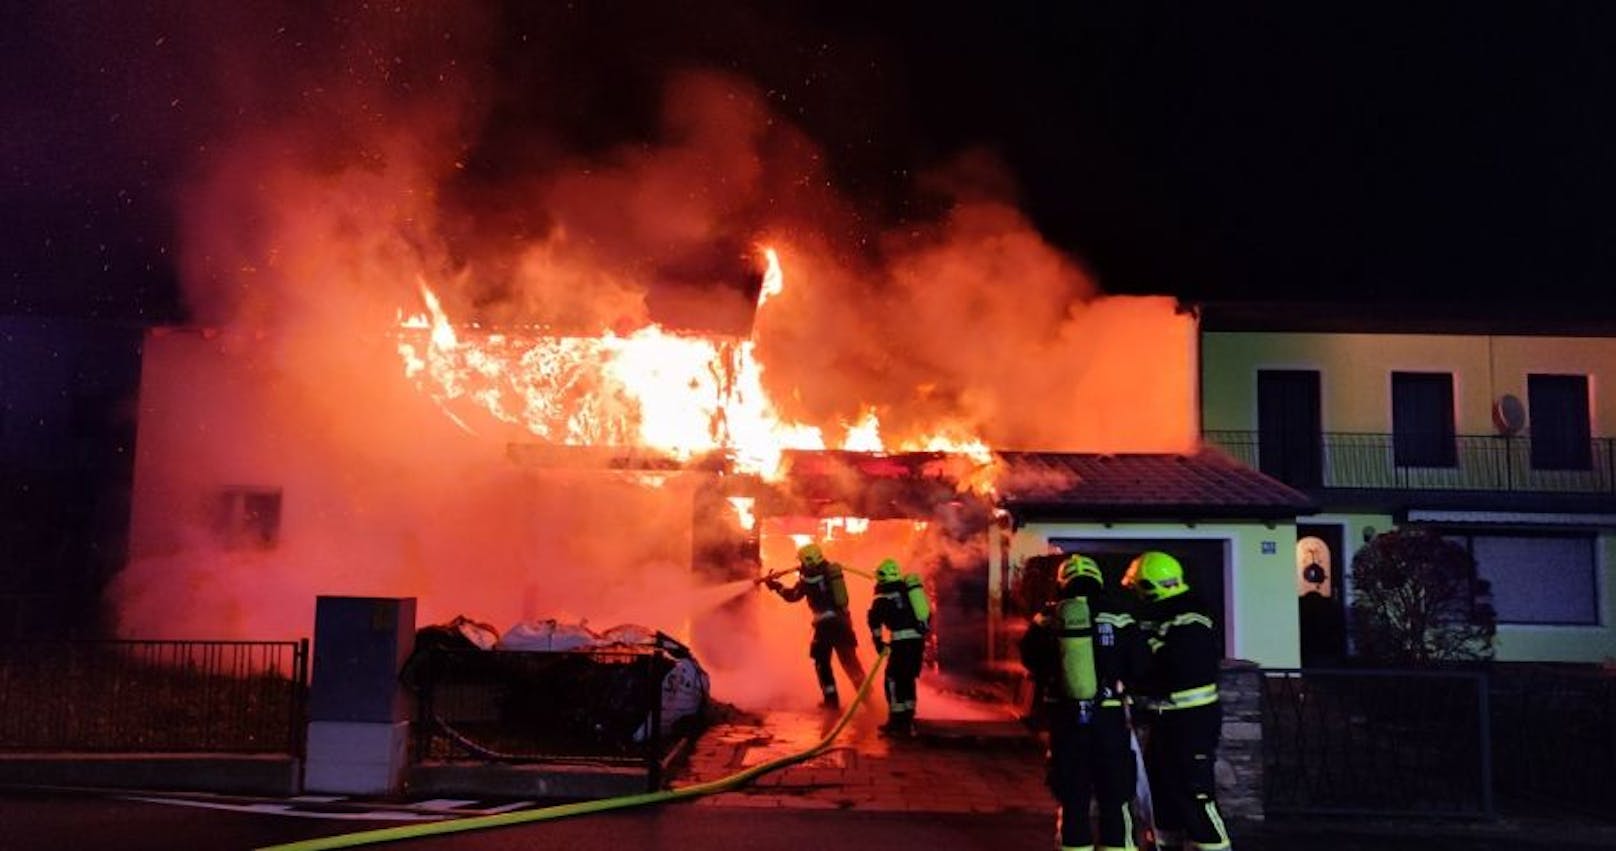 Wohnhausbrand in Tulln: Die Feuerwehr im Löscheinsatz